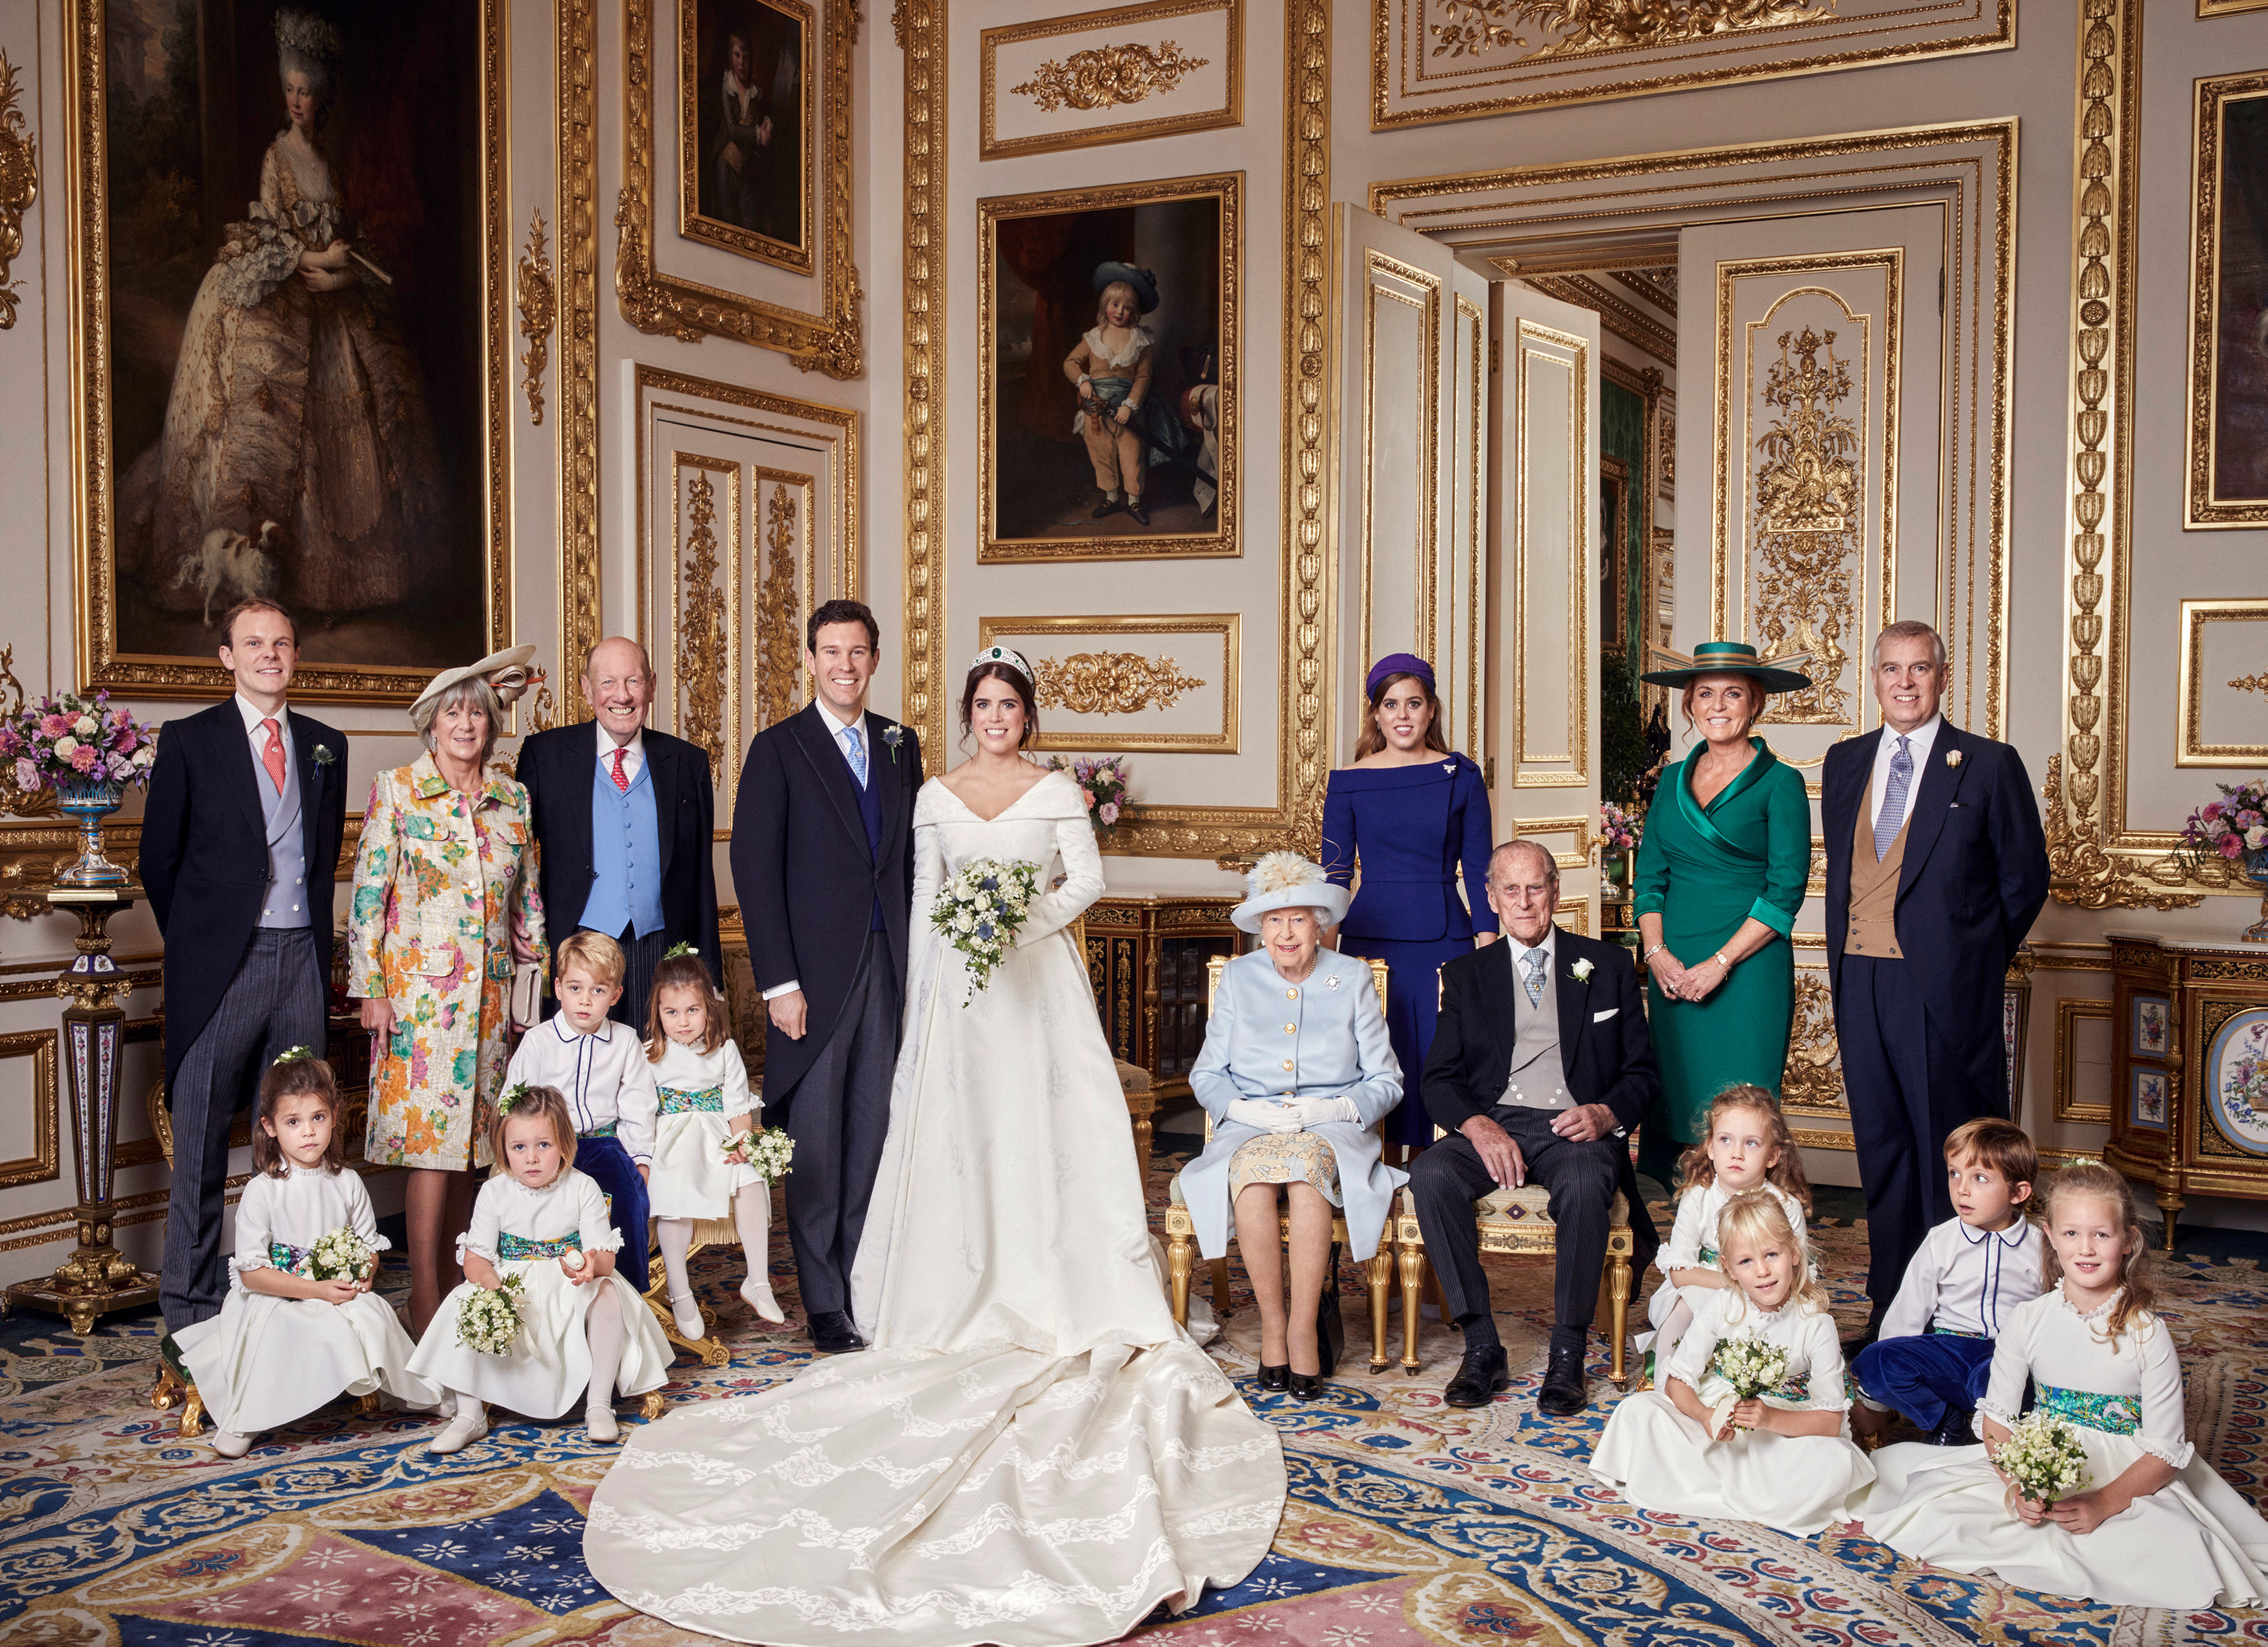 الأميرة يوجينى مع الأسرة الحاكمة فى البريطانية